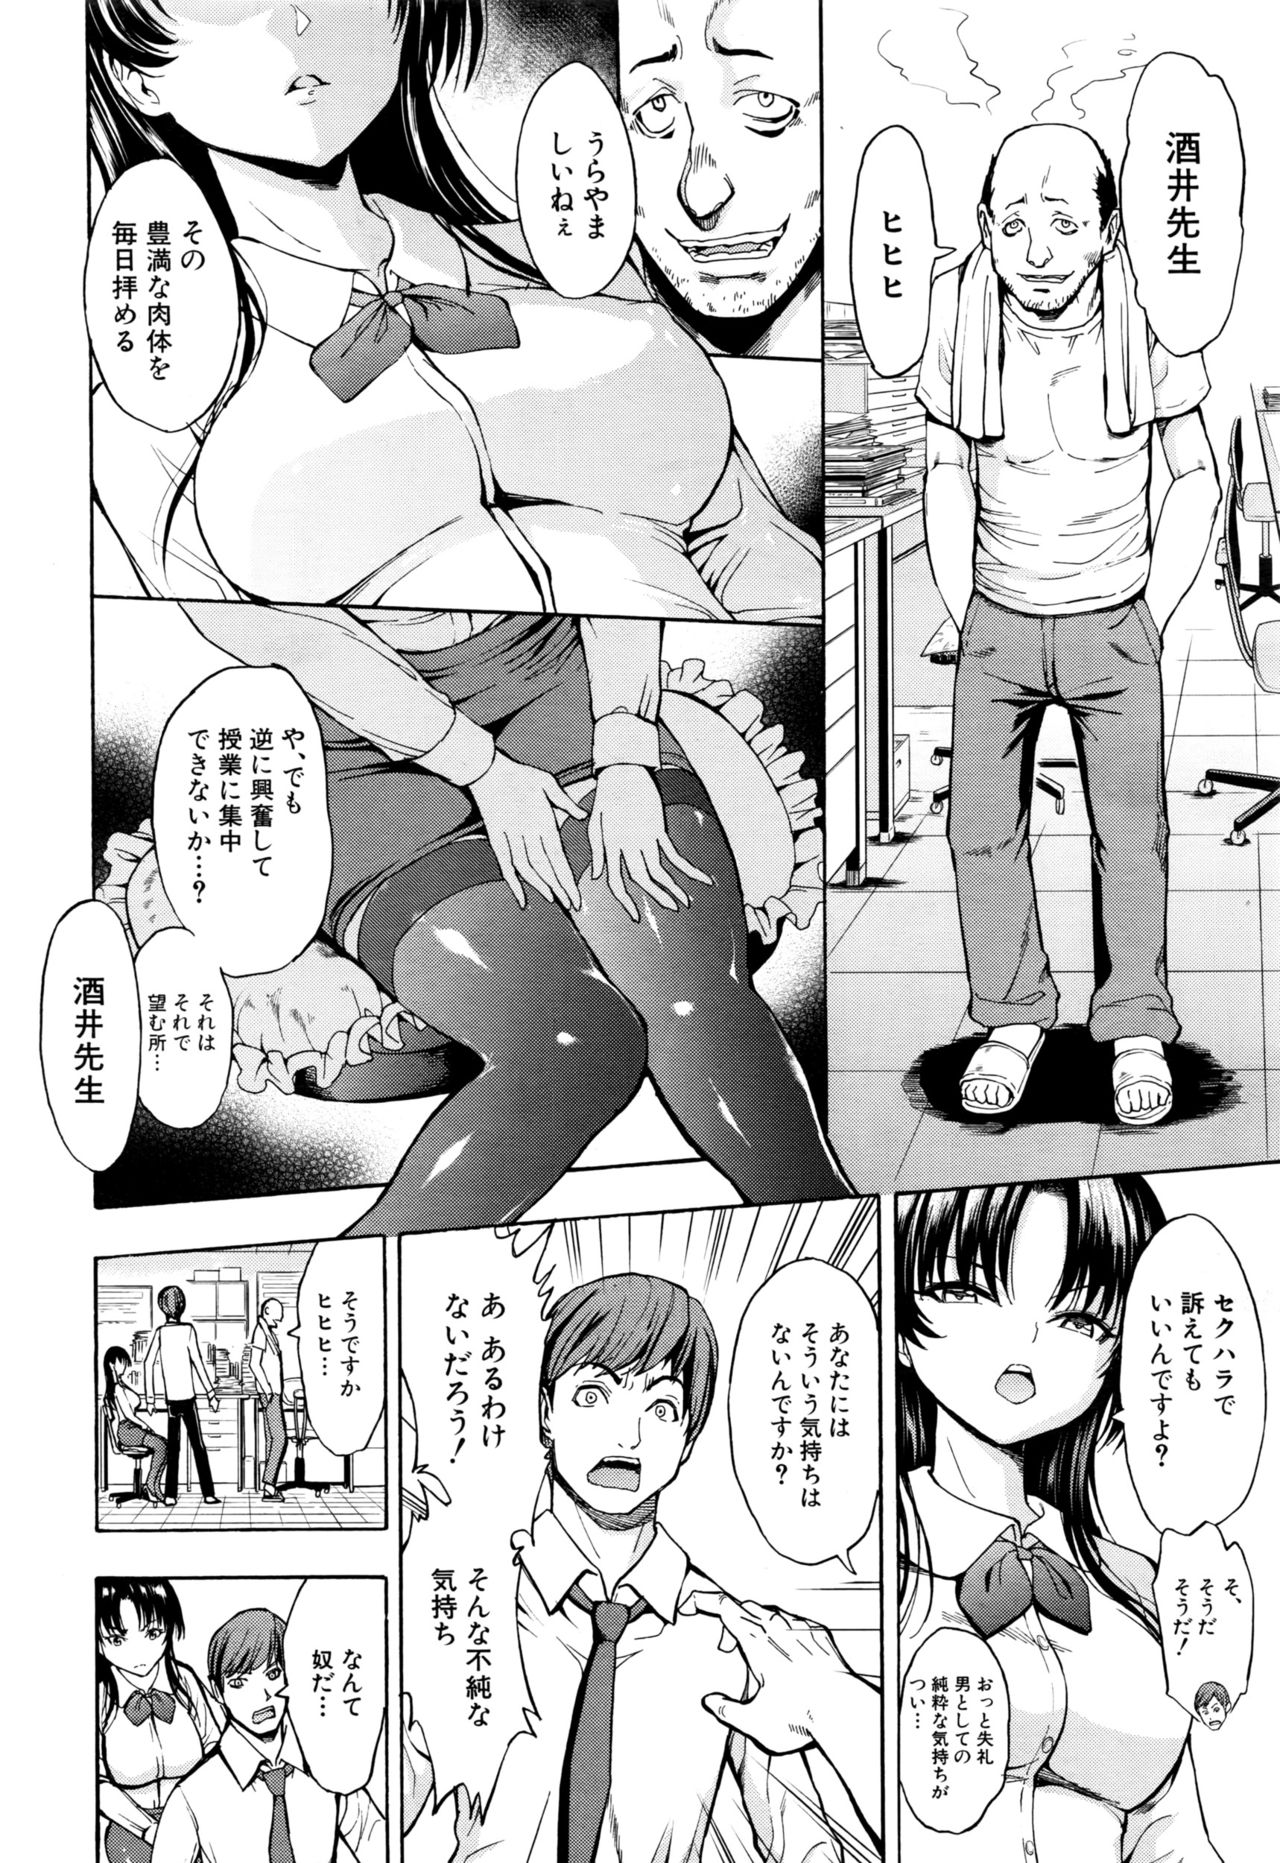 [Hakaba] Ichikawa Miyuki Ch 1-4 page 4 full